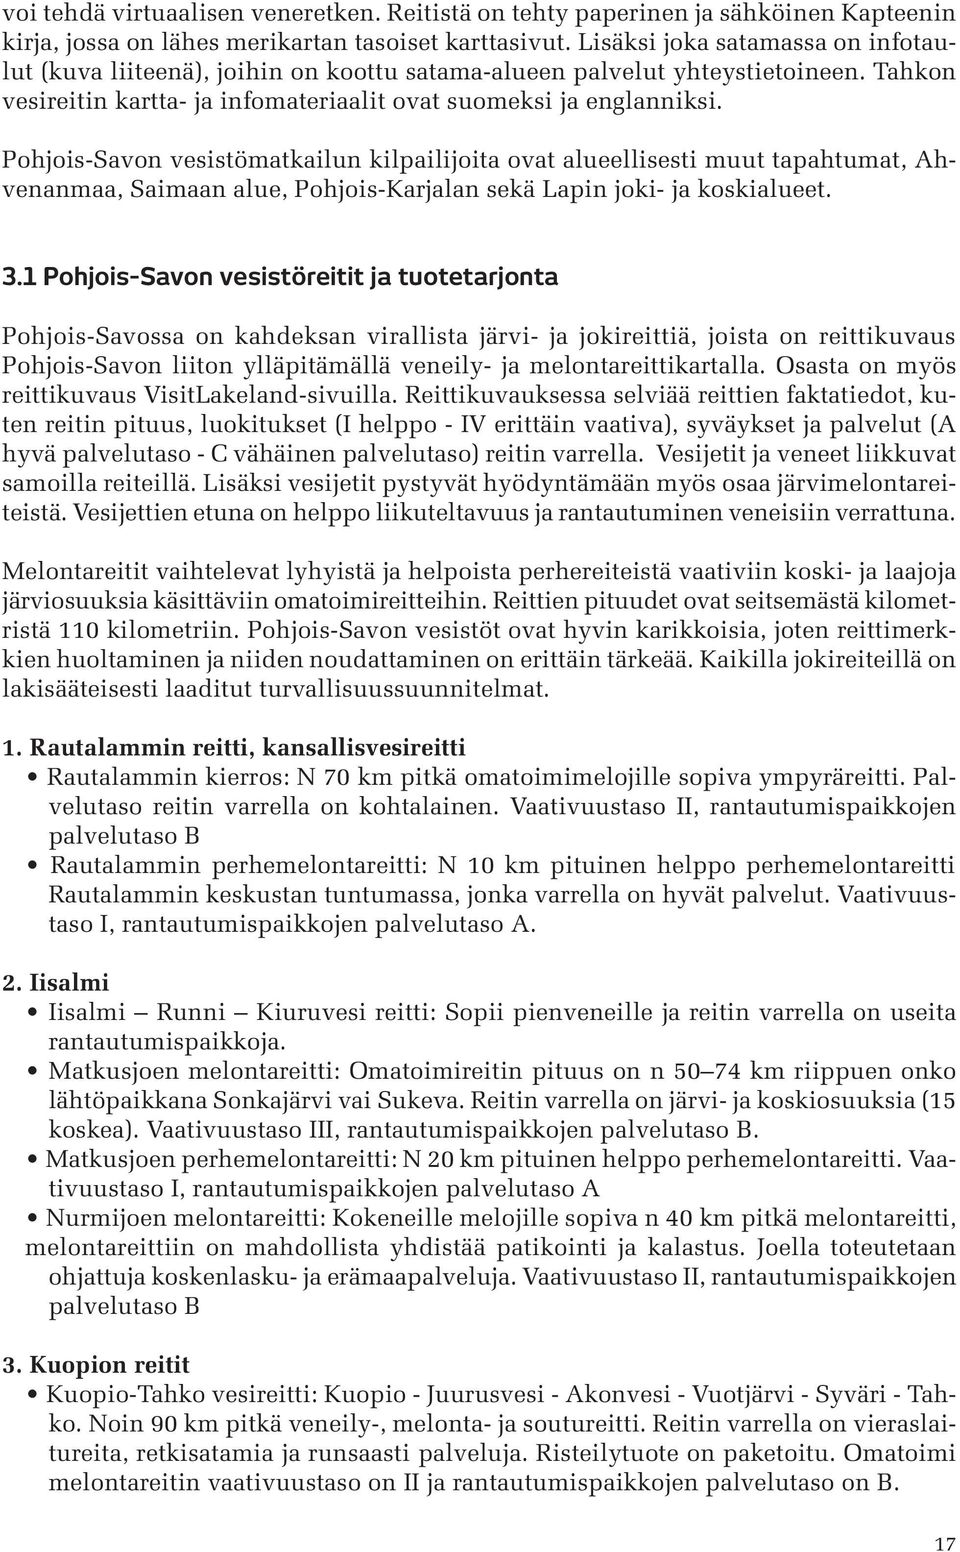 Pohjois-Savon vesistömatkailun kilpailijoita ovat alueellisesti muut tapahtumat, Ahvenanmaa, Saimaan alue, Pohjois-Karjalan sekä Lapin joki- ja koskialueet. 3.